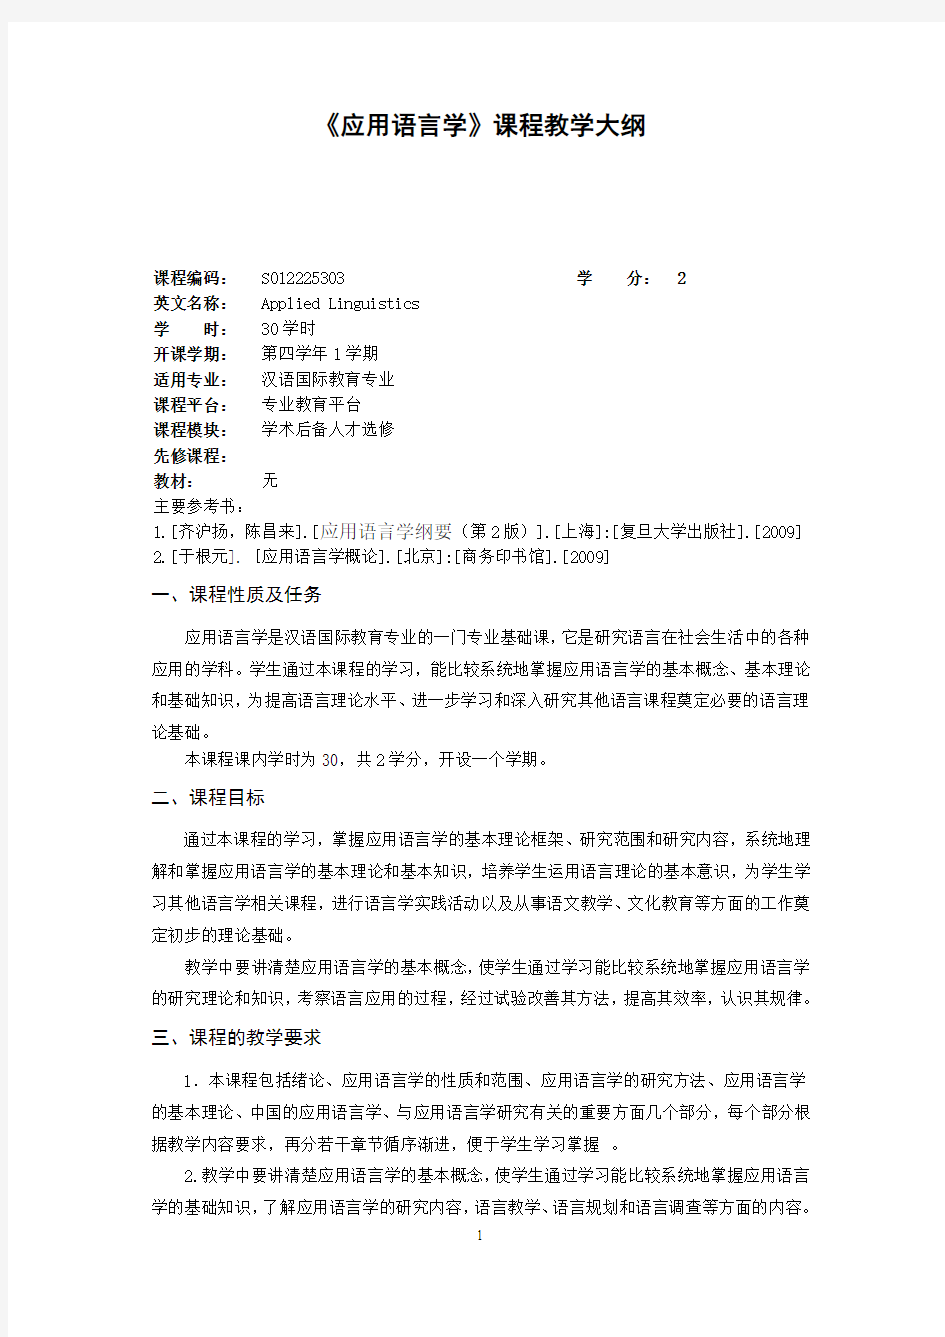 汉语国际教育专业《应用语言学》教学大纲